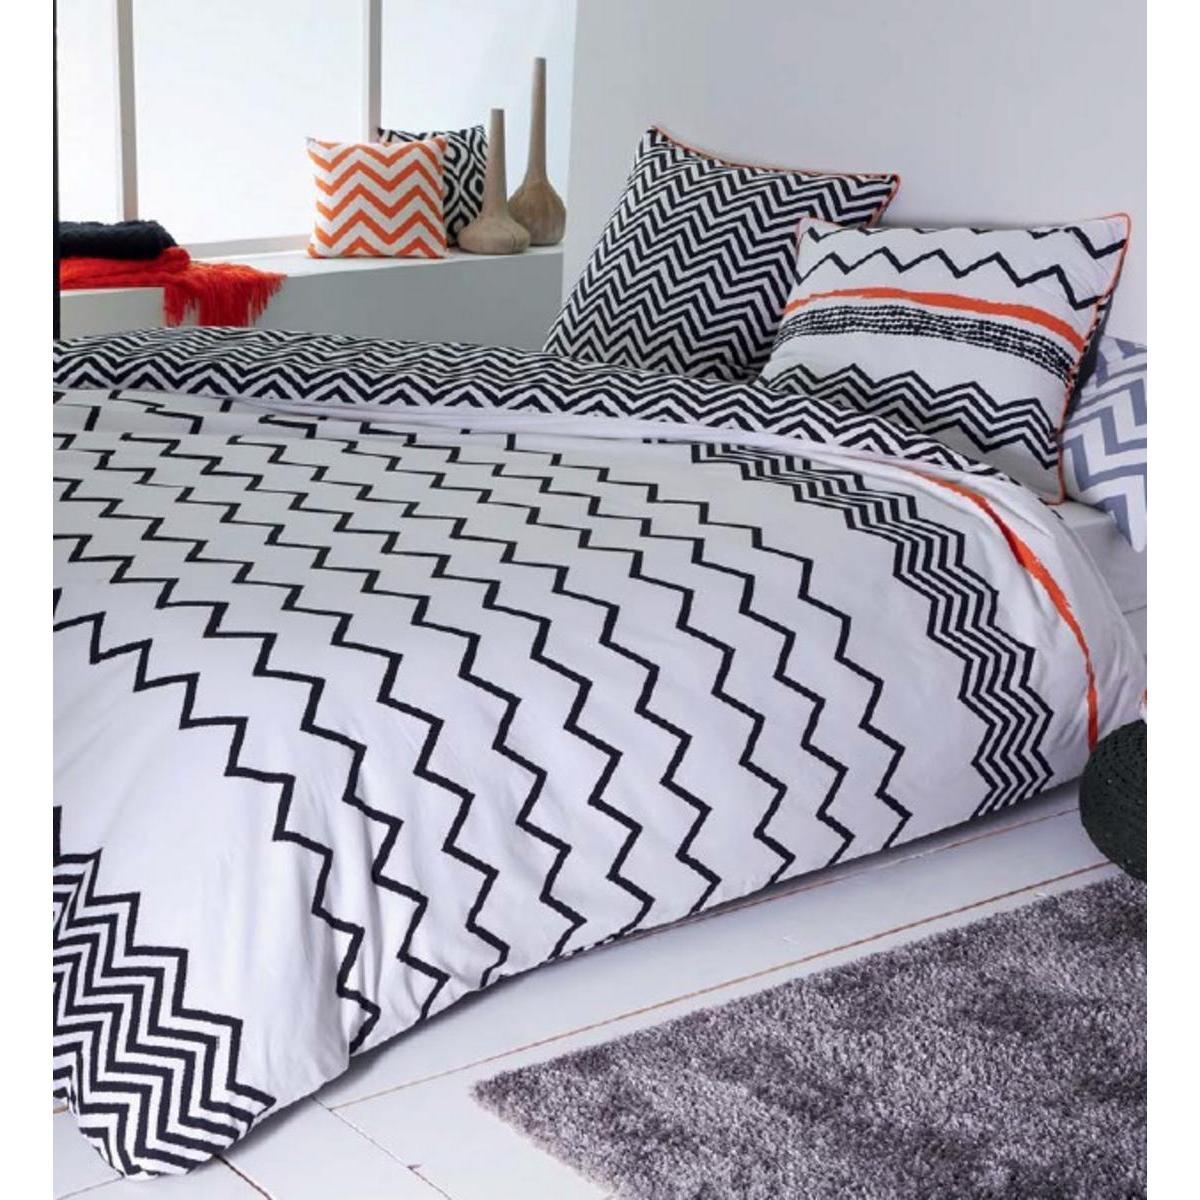 Parure de lit et 2 taies d'oreiller - Coton et polyester - 240 x 220 cm - Noir, blanc et orange